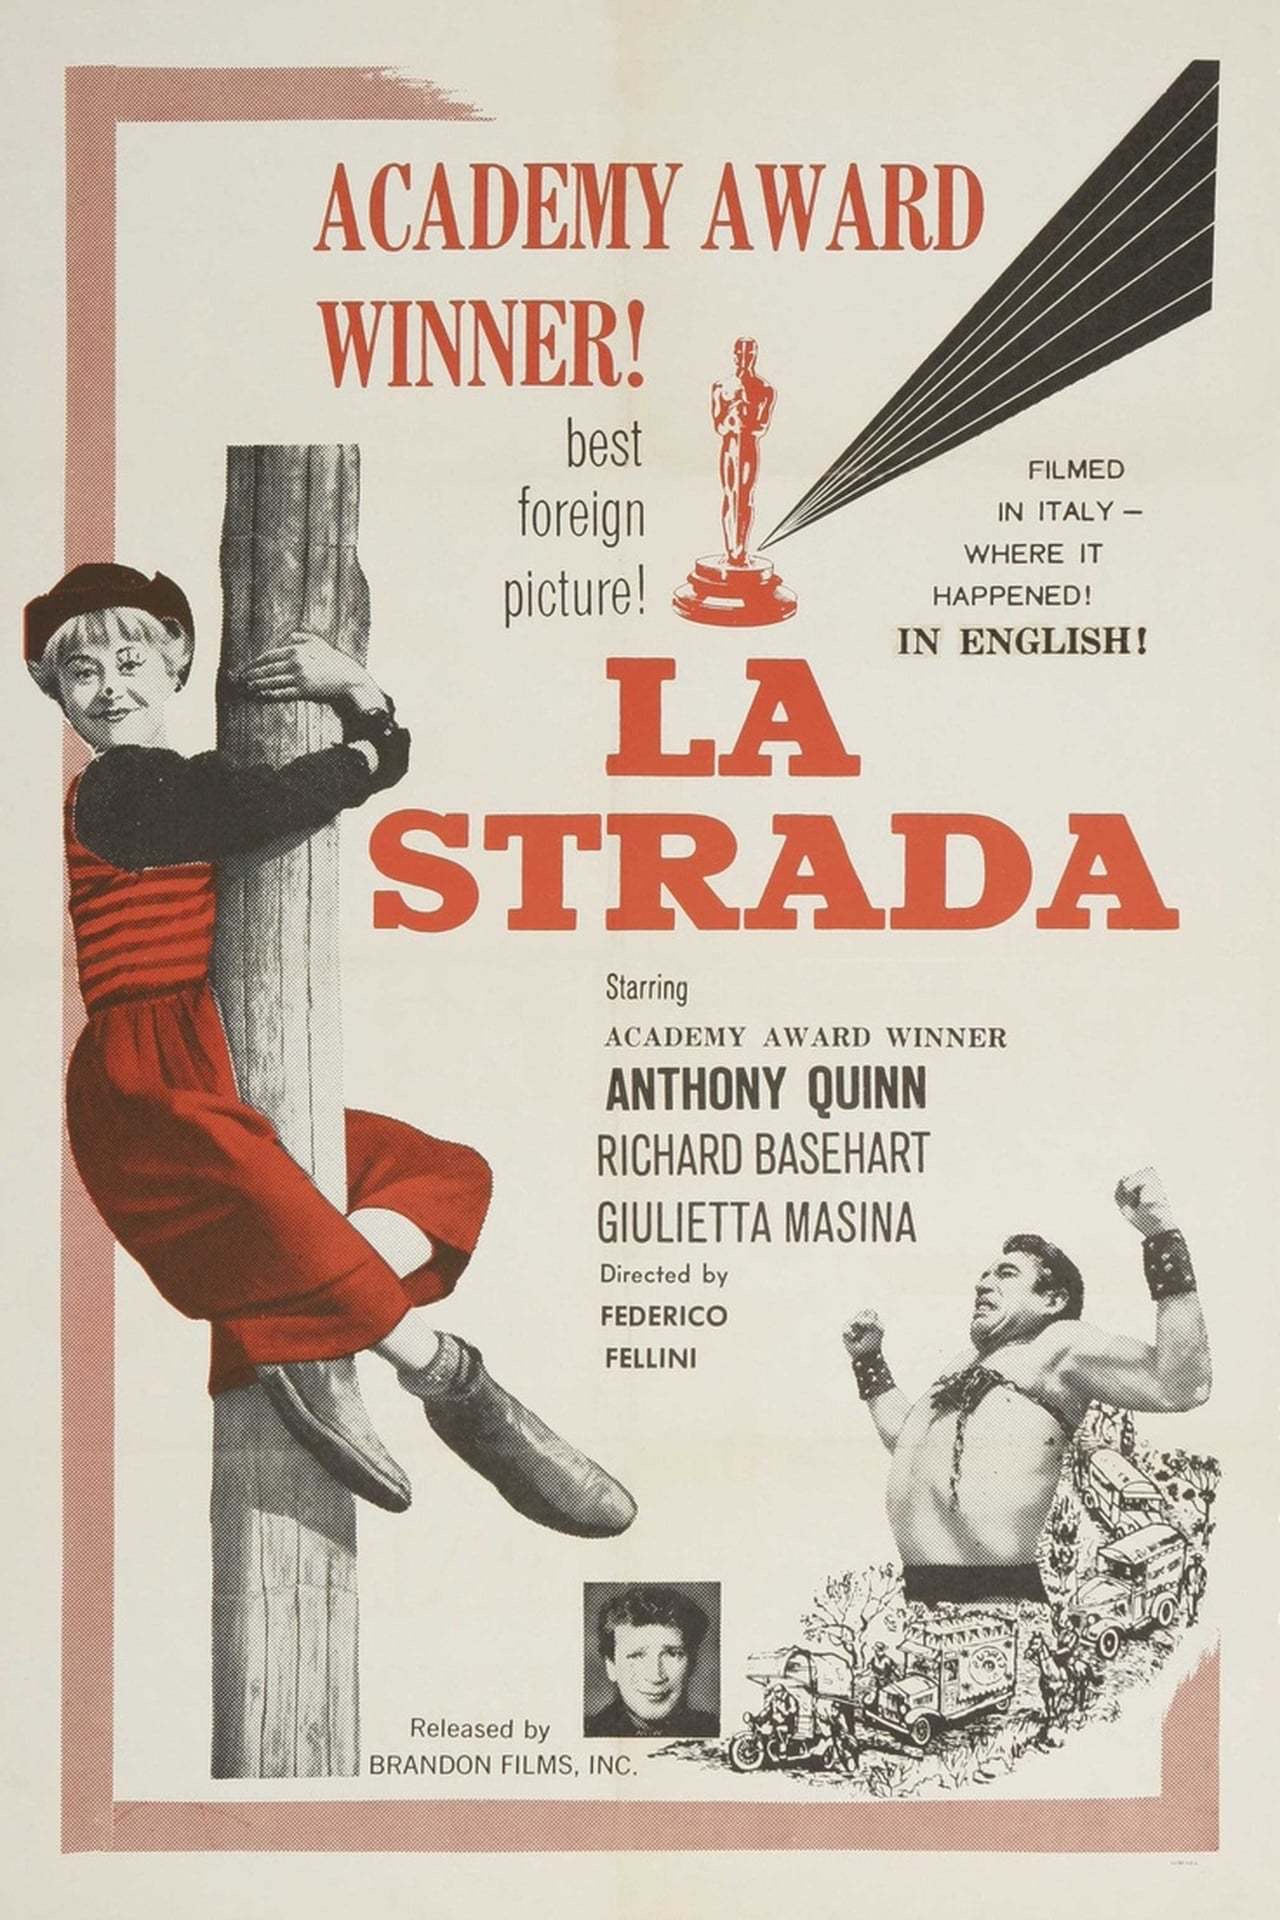 THE ROAD Original Title LA STRADA (1954)